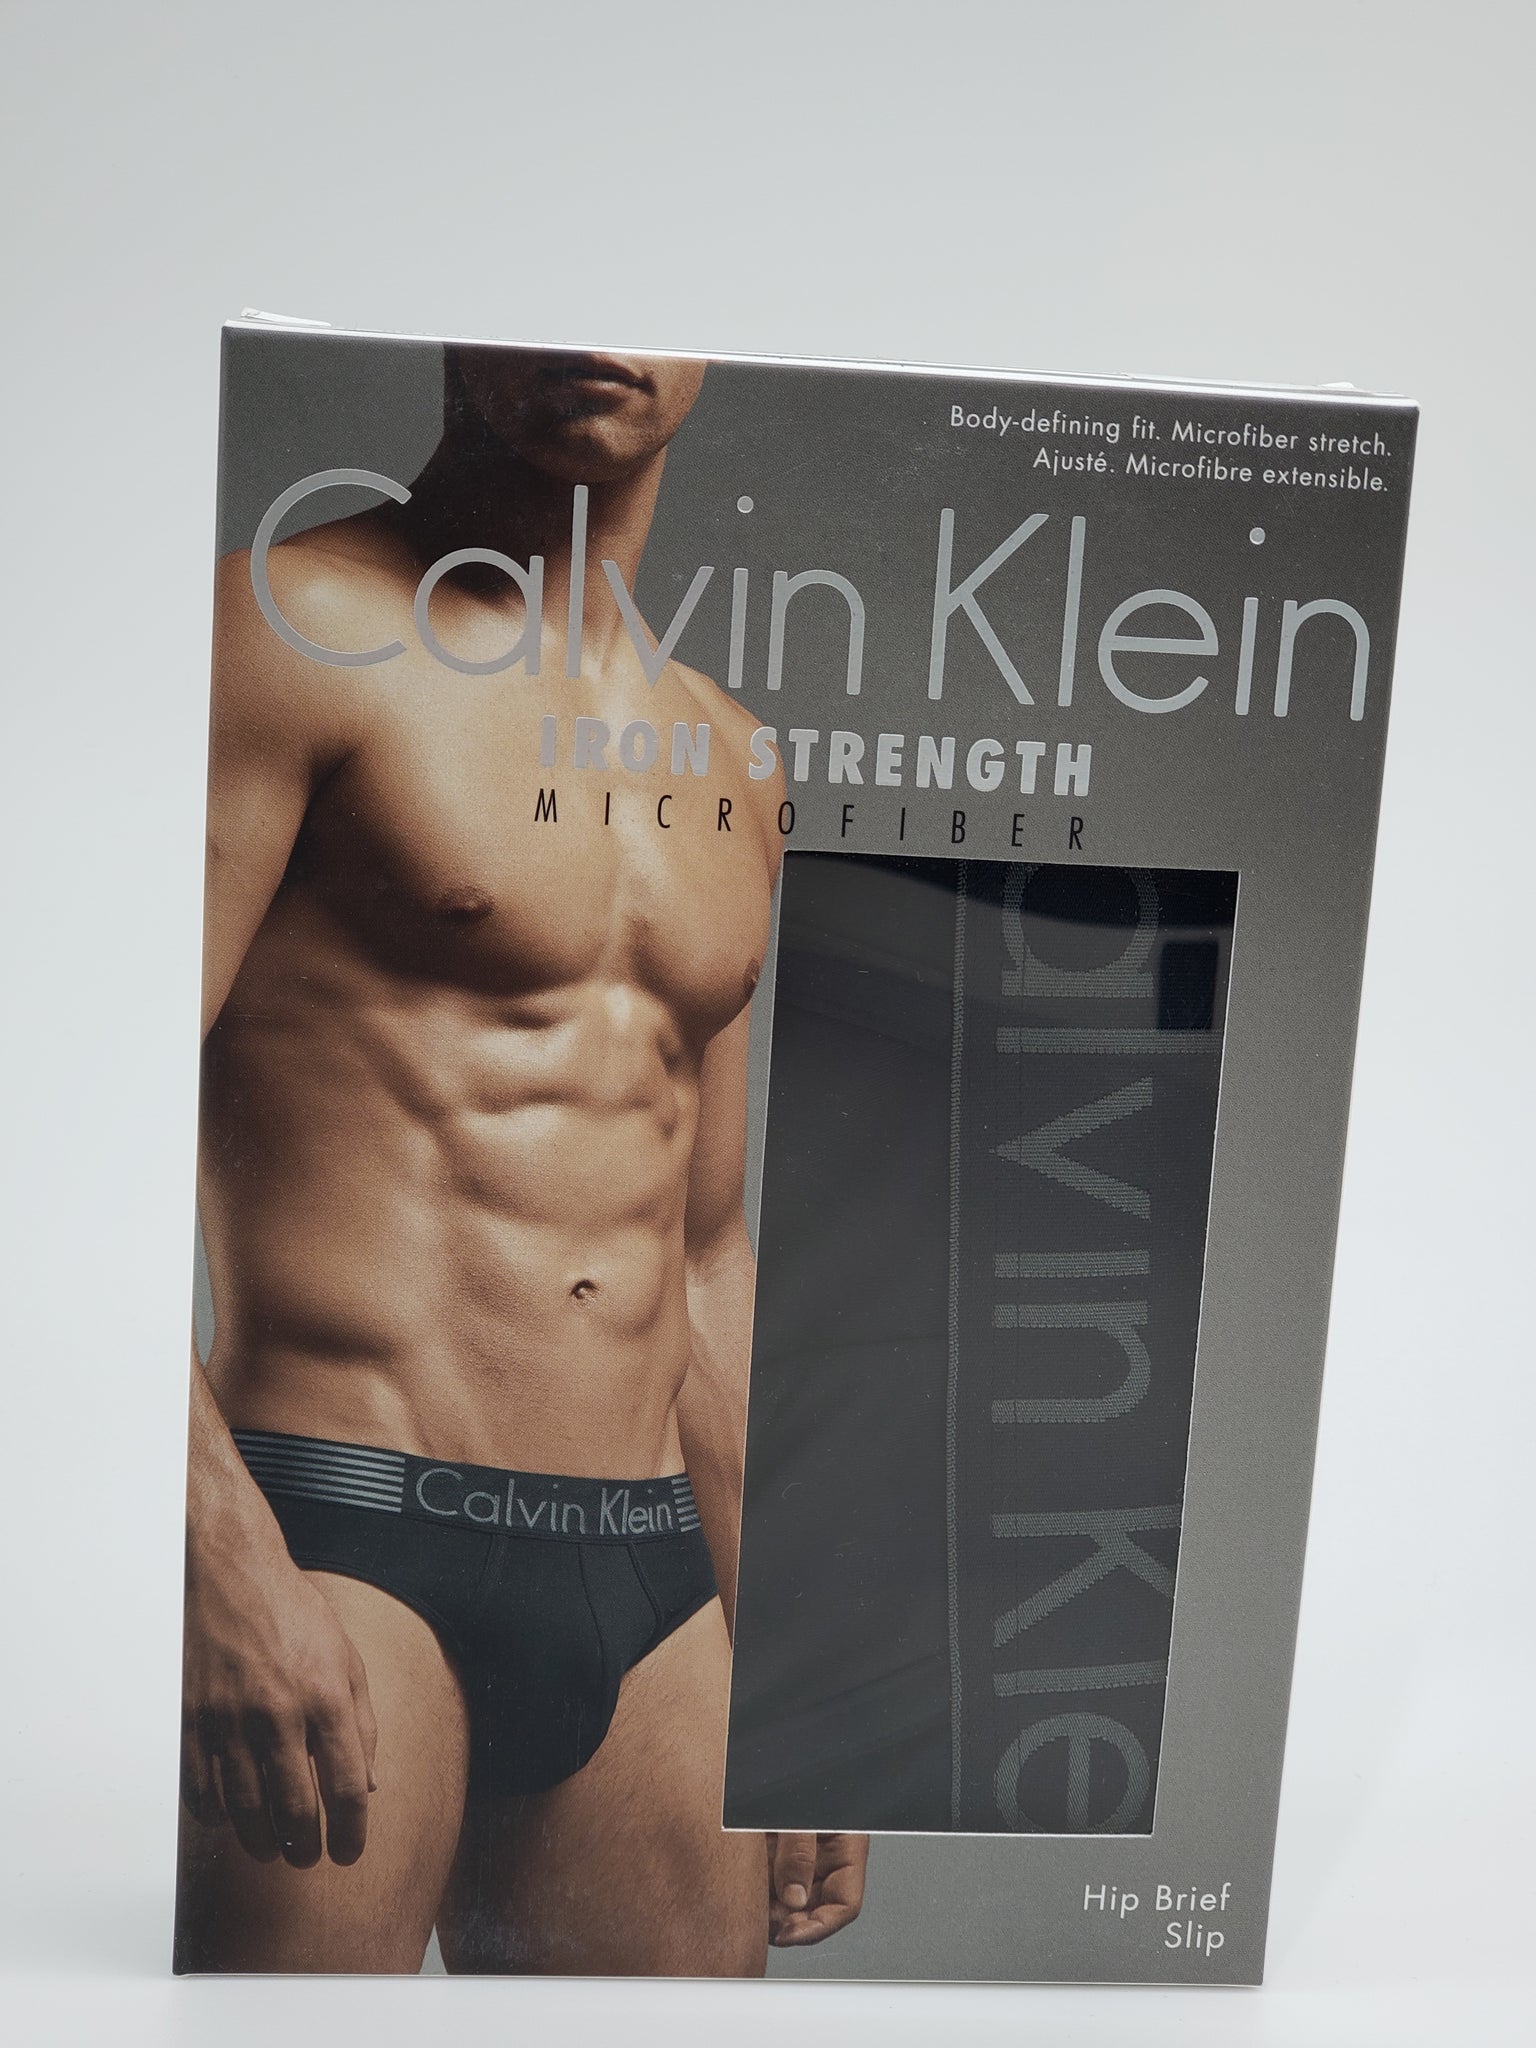 Calvin Klein Iron Strength Microfiber – Kate Addison Boutique